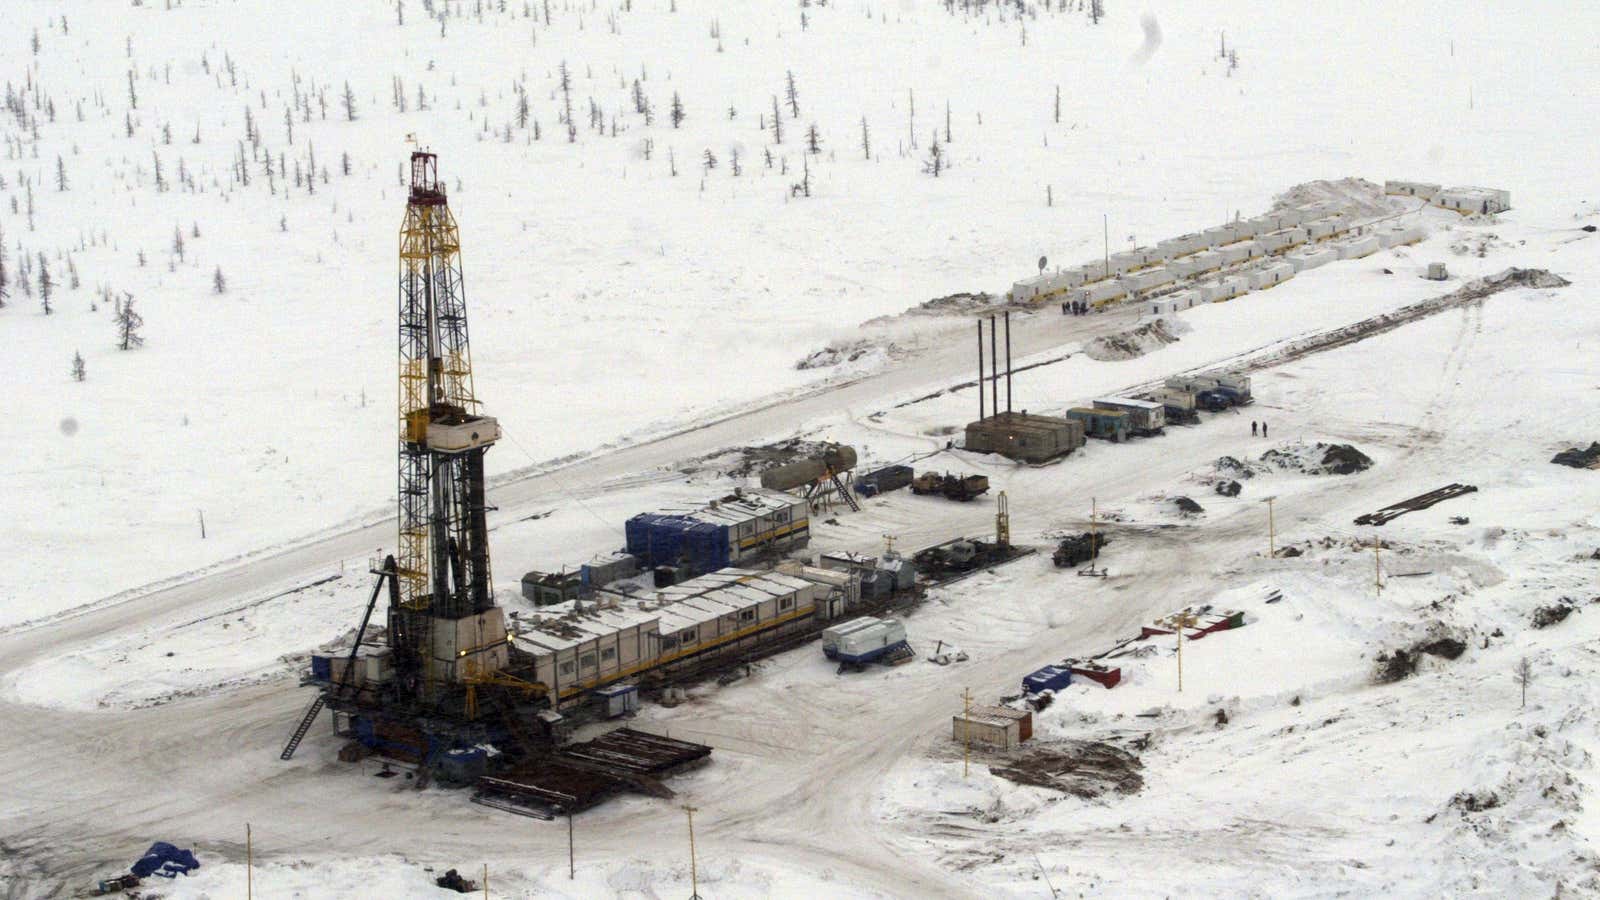 An oil rig at Rosneft’s Vankor oil field in eastern Siberia